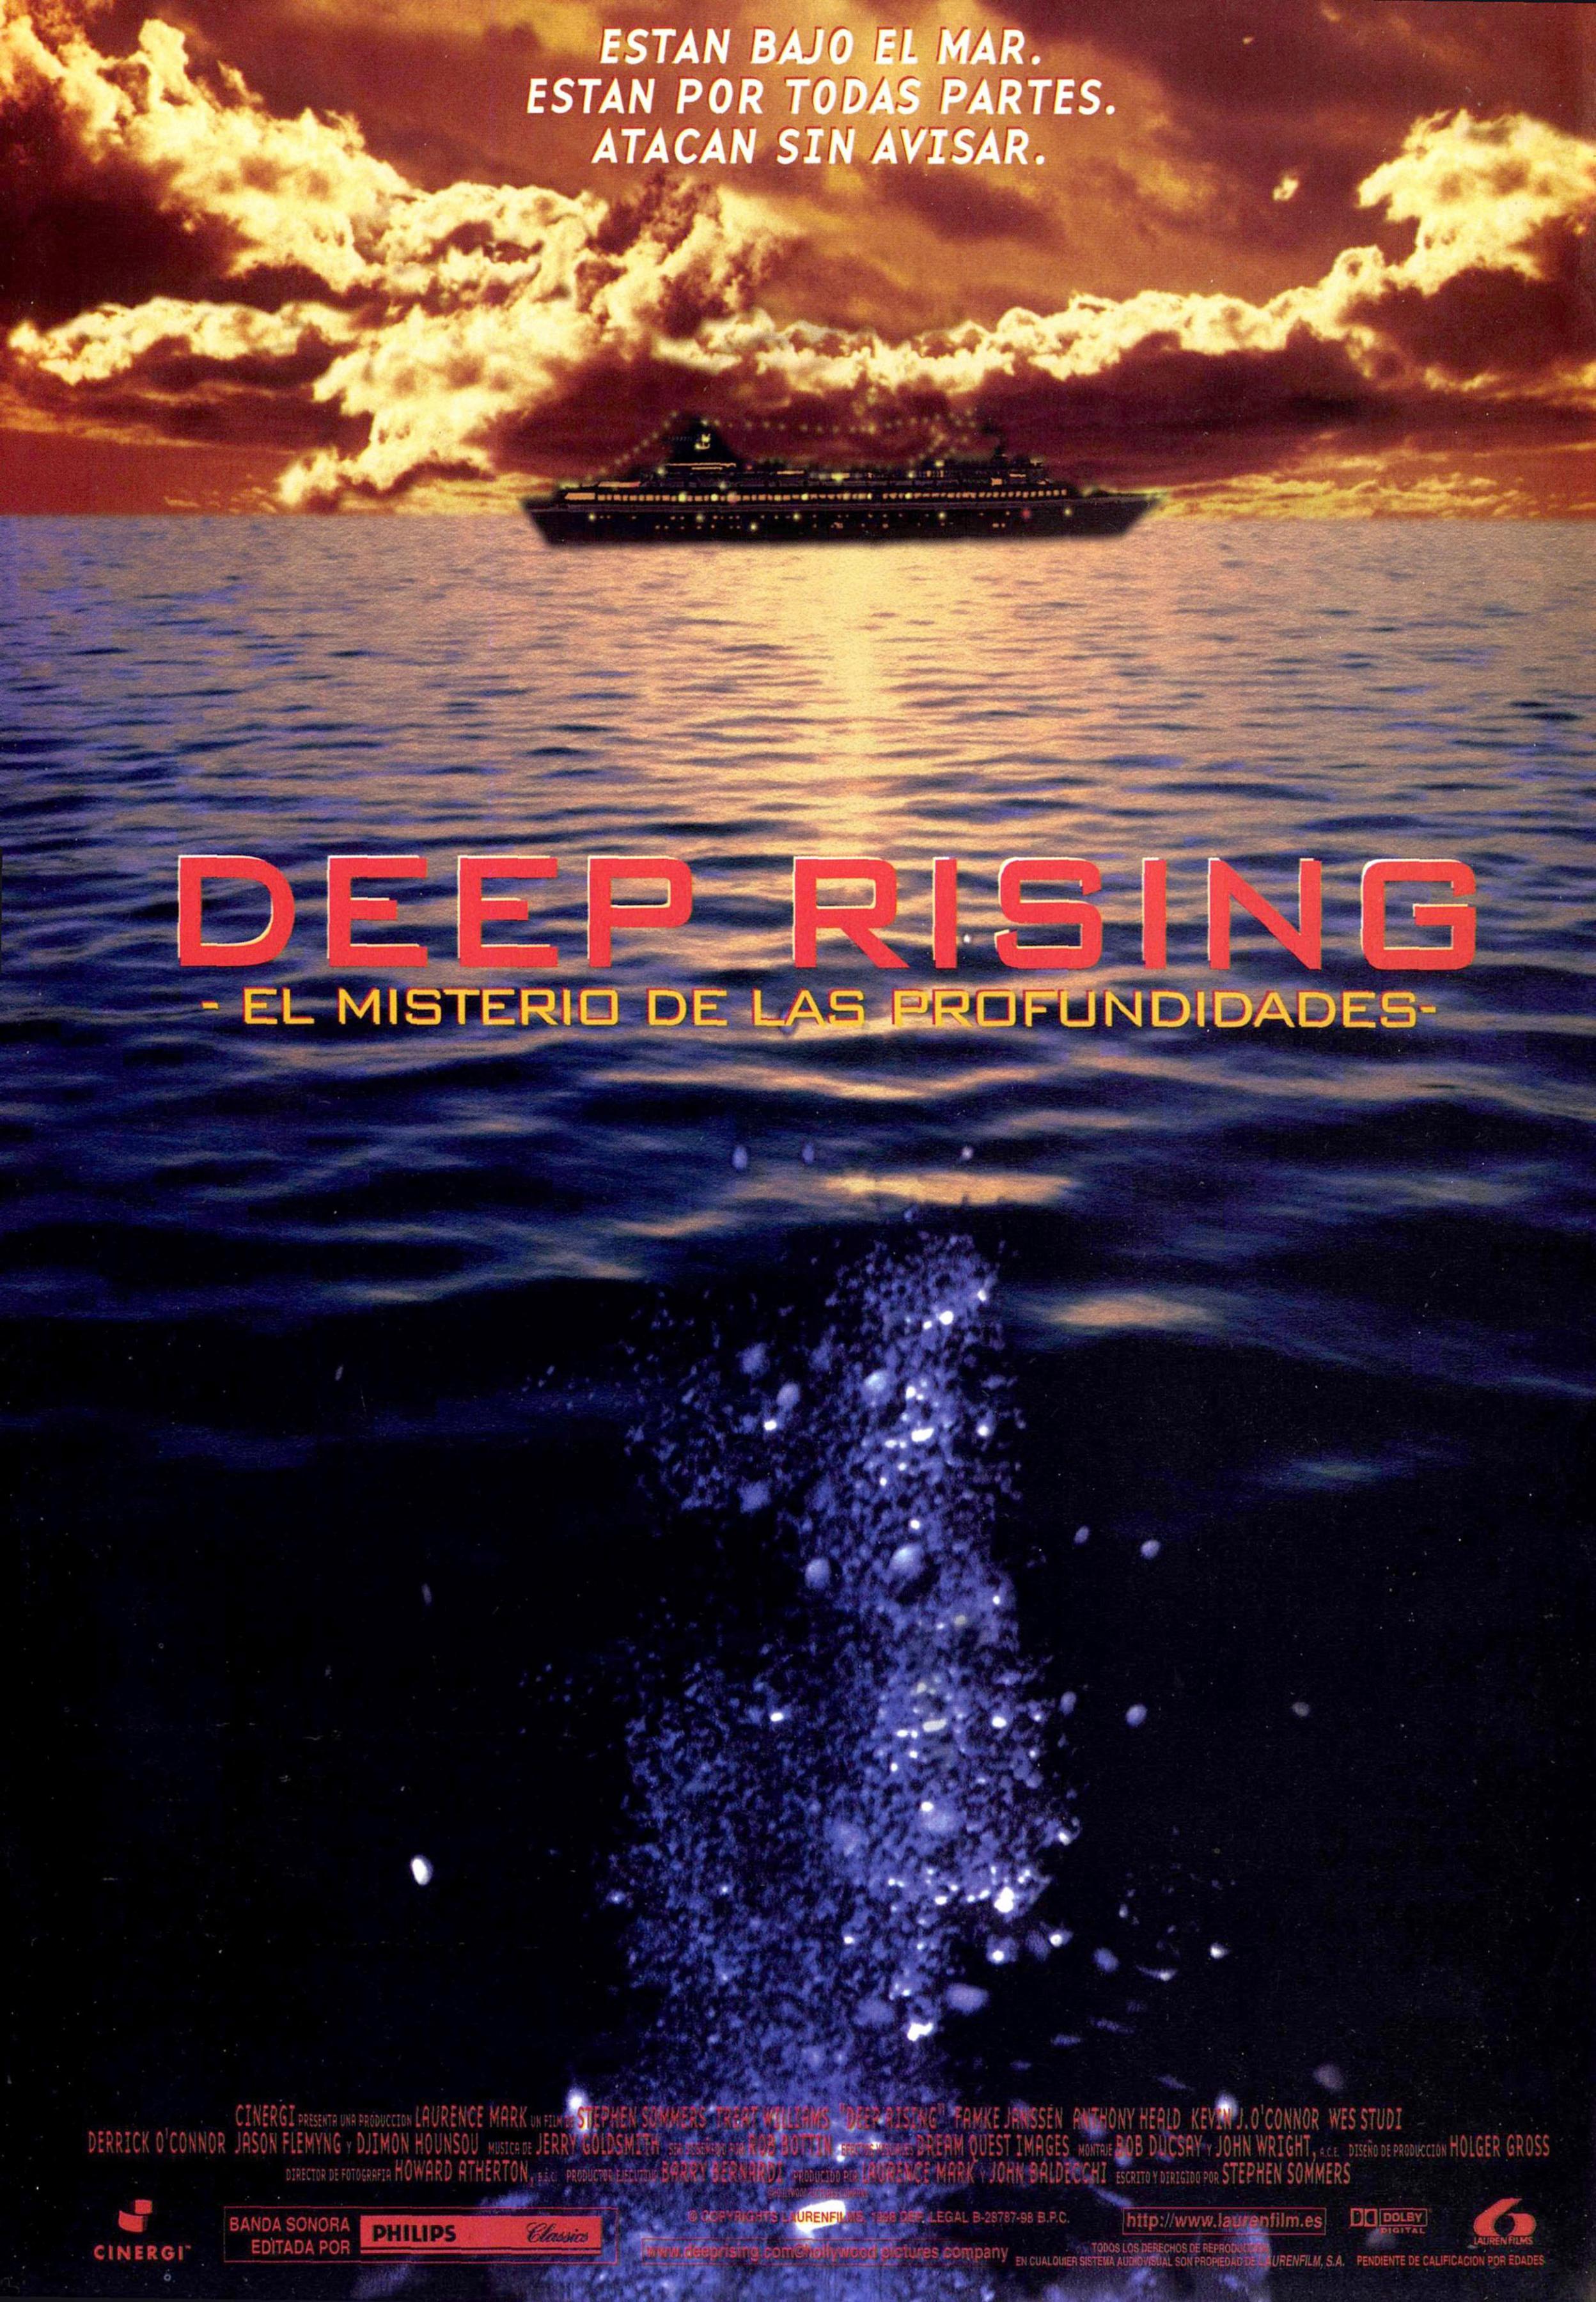 Постер фильма Подъем с глубины | Deep Rising